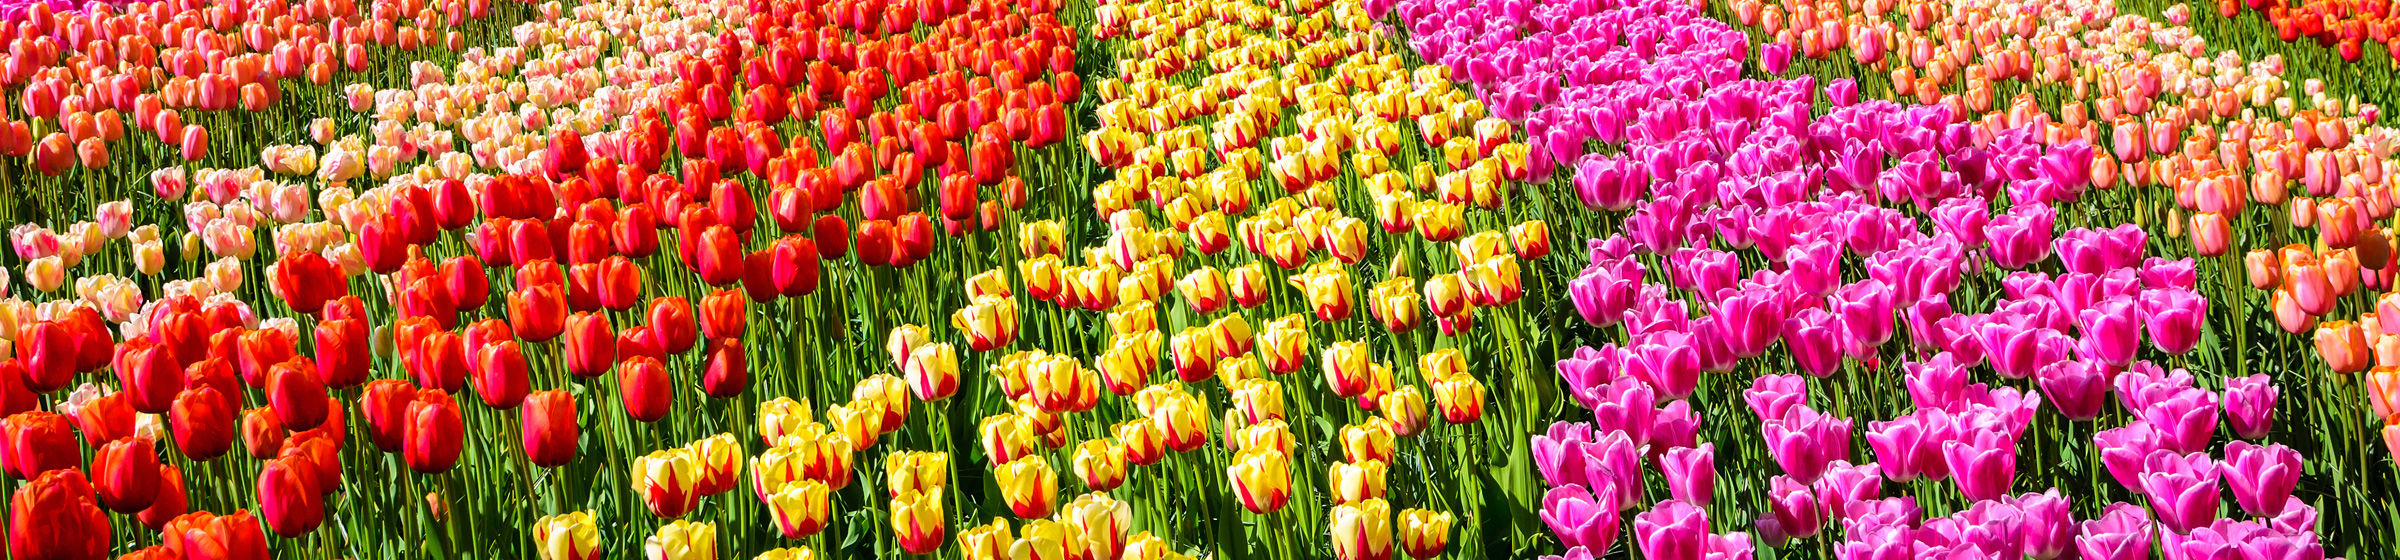 Blomstereng med tulipaner